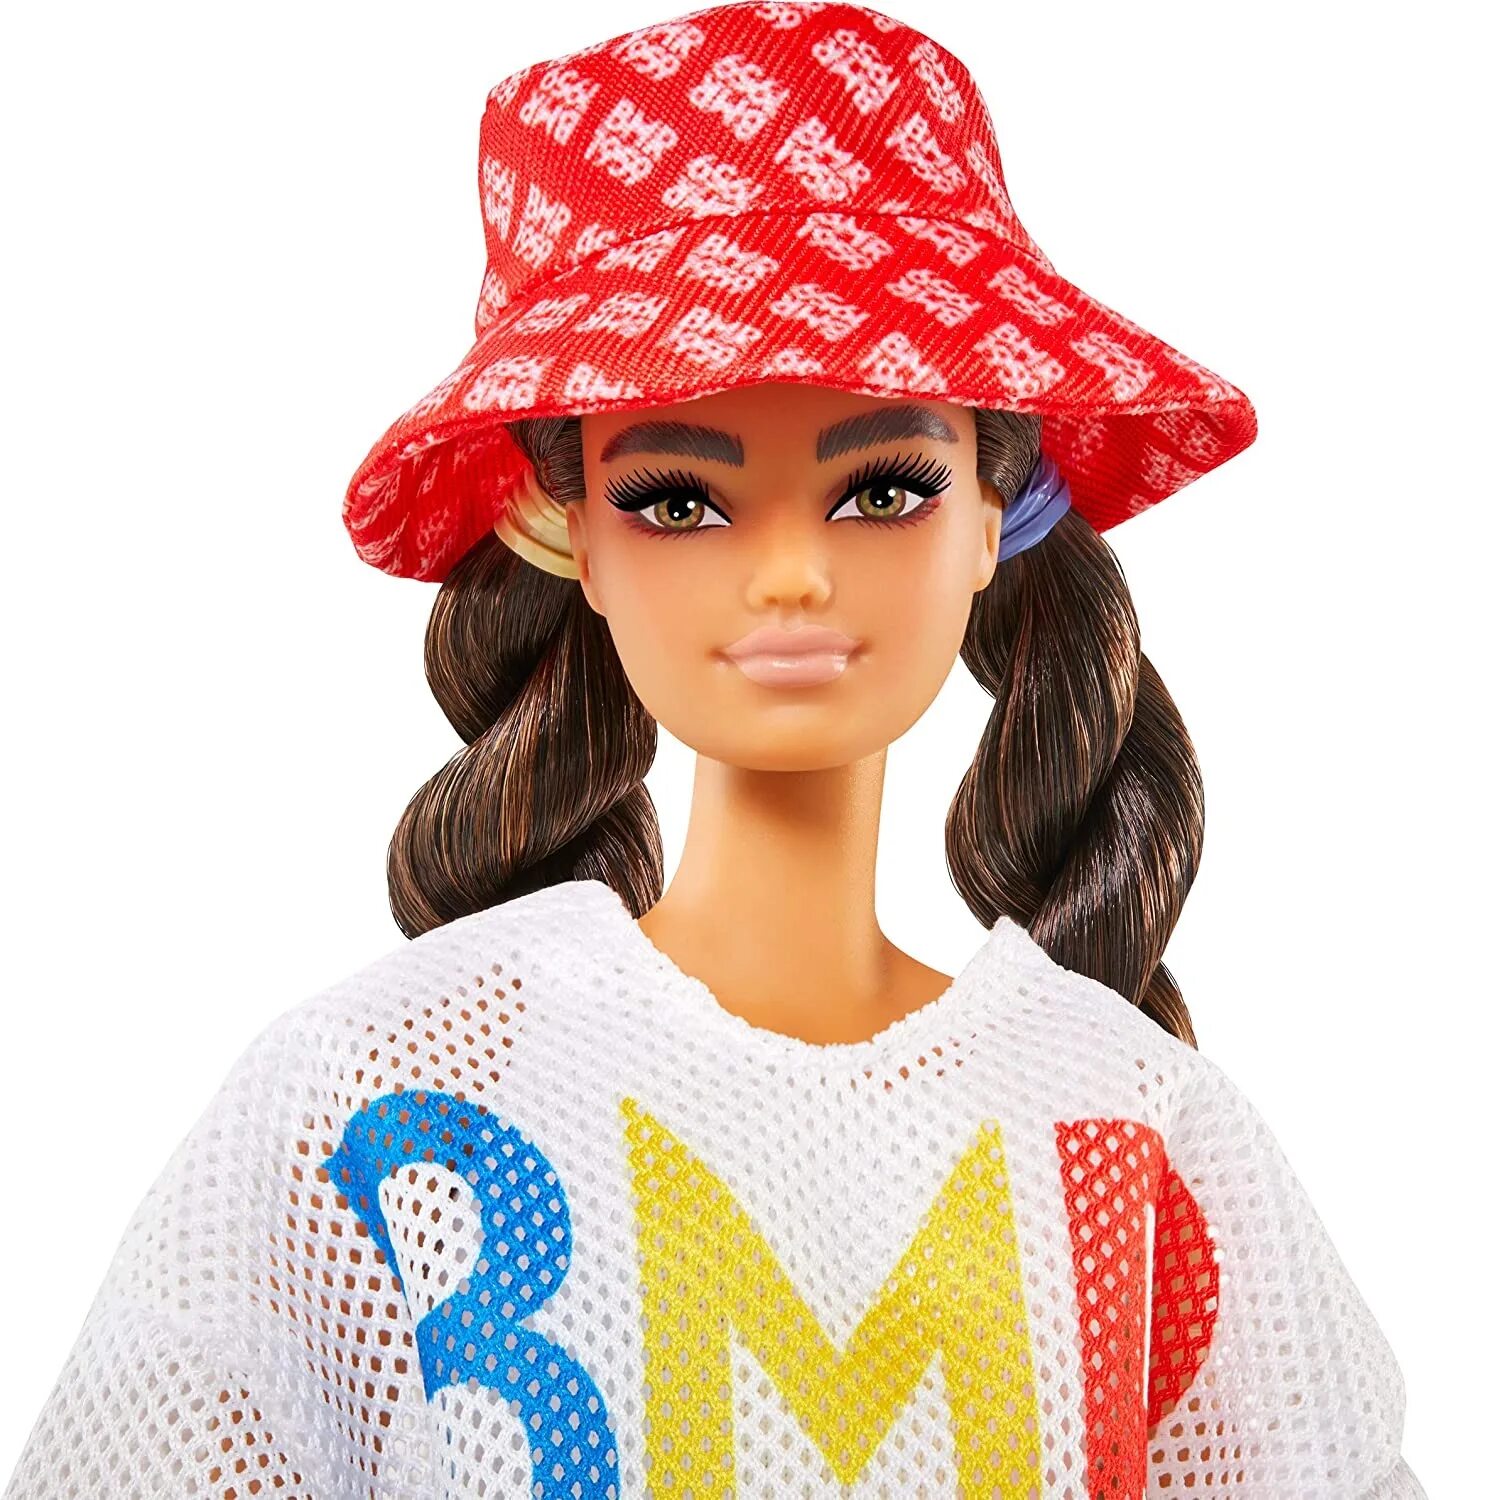 Кукла Барби BMR 1959. Барби коллекция bmr1959. Куклы Барби БМР 1959. Кукла Barbie коллекционная bmr1959.